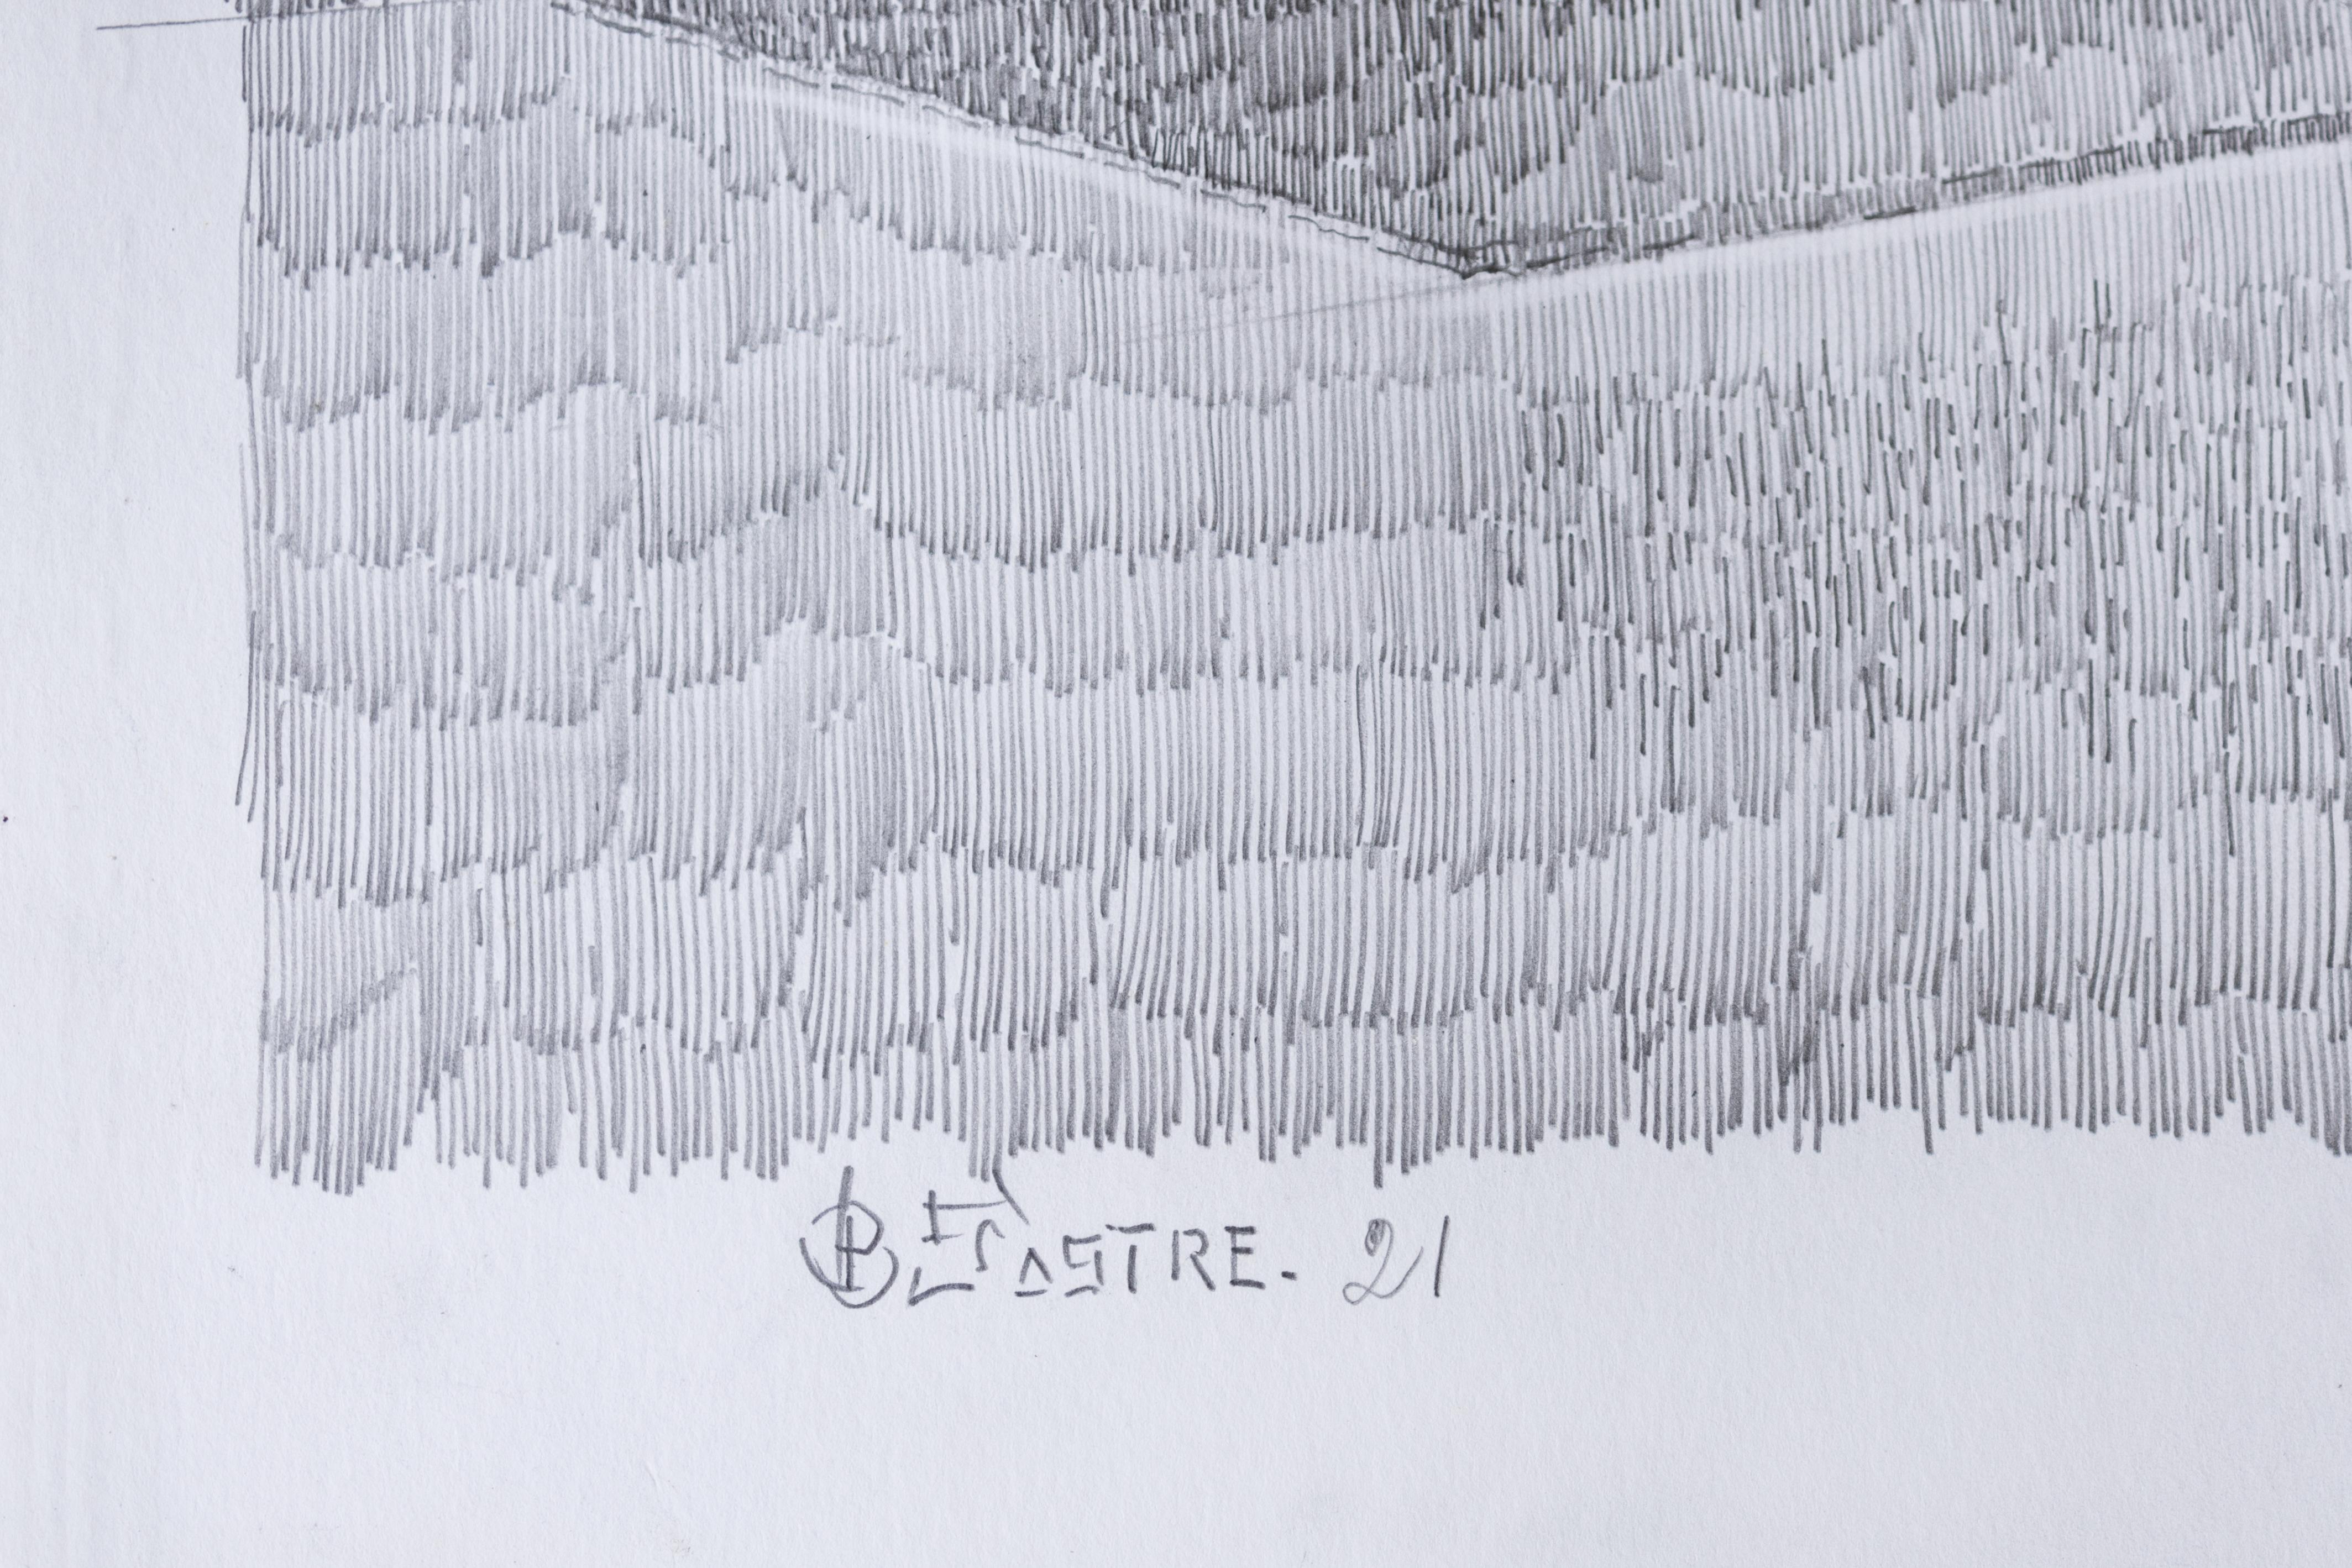 Ein Stück aus Bartolome Sastres Sammlung von Mischtechniken auf Papier.
19,5 x 27,5 Zoll
Pastell und Bleistift auf Papier